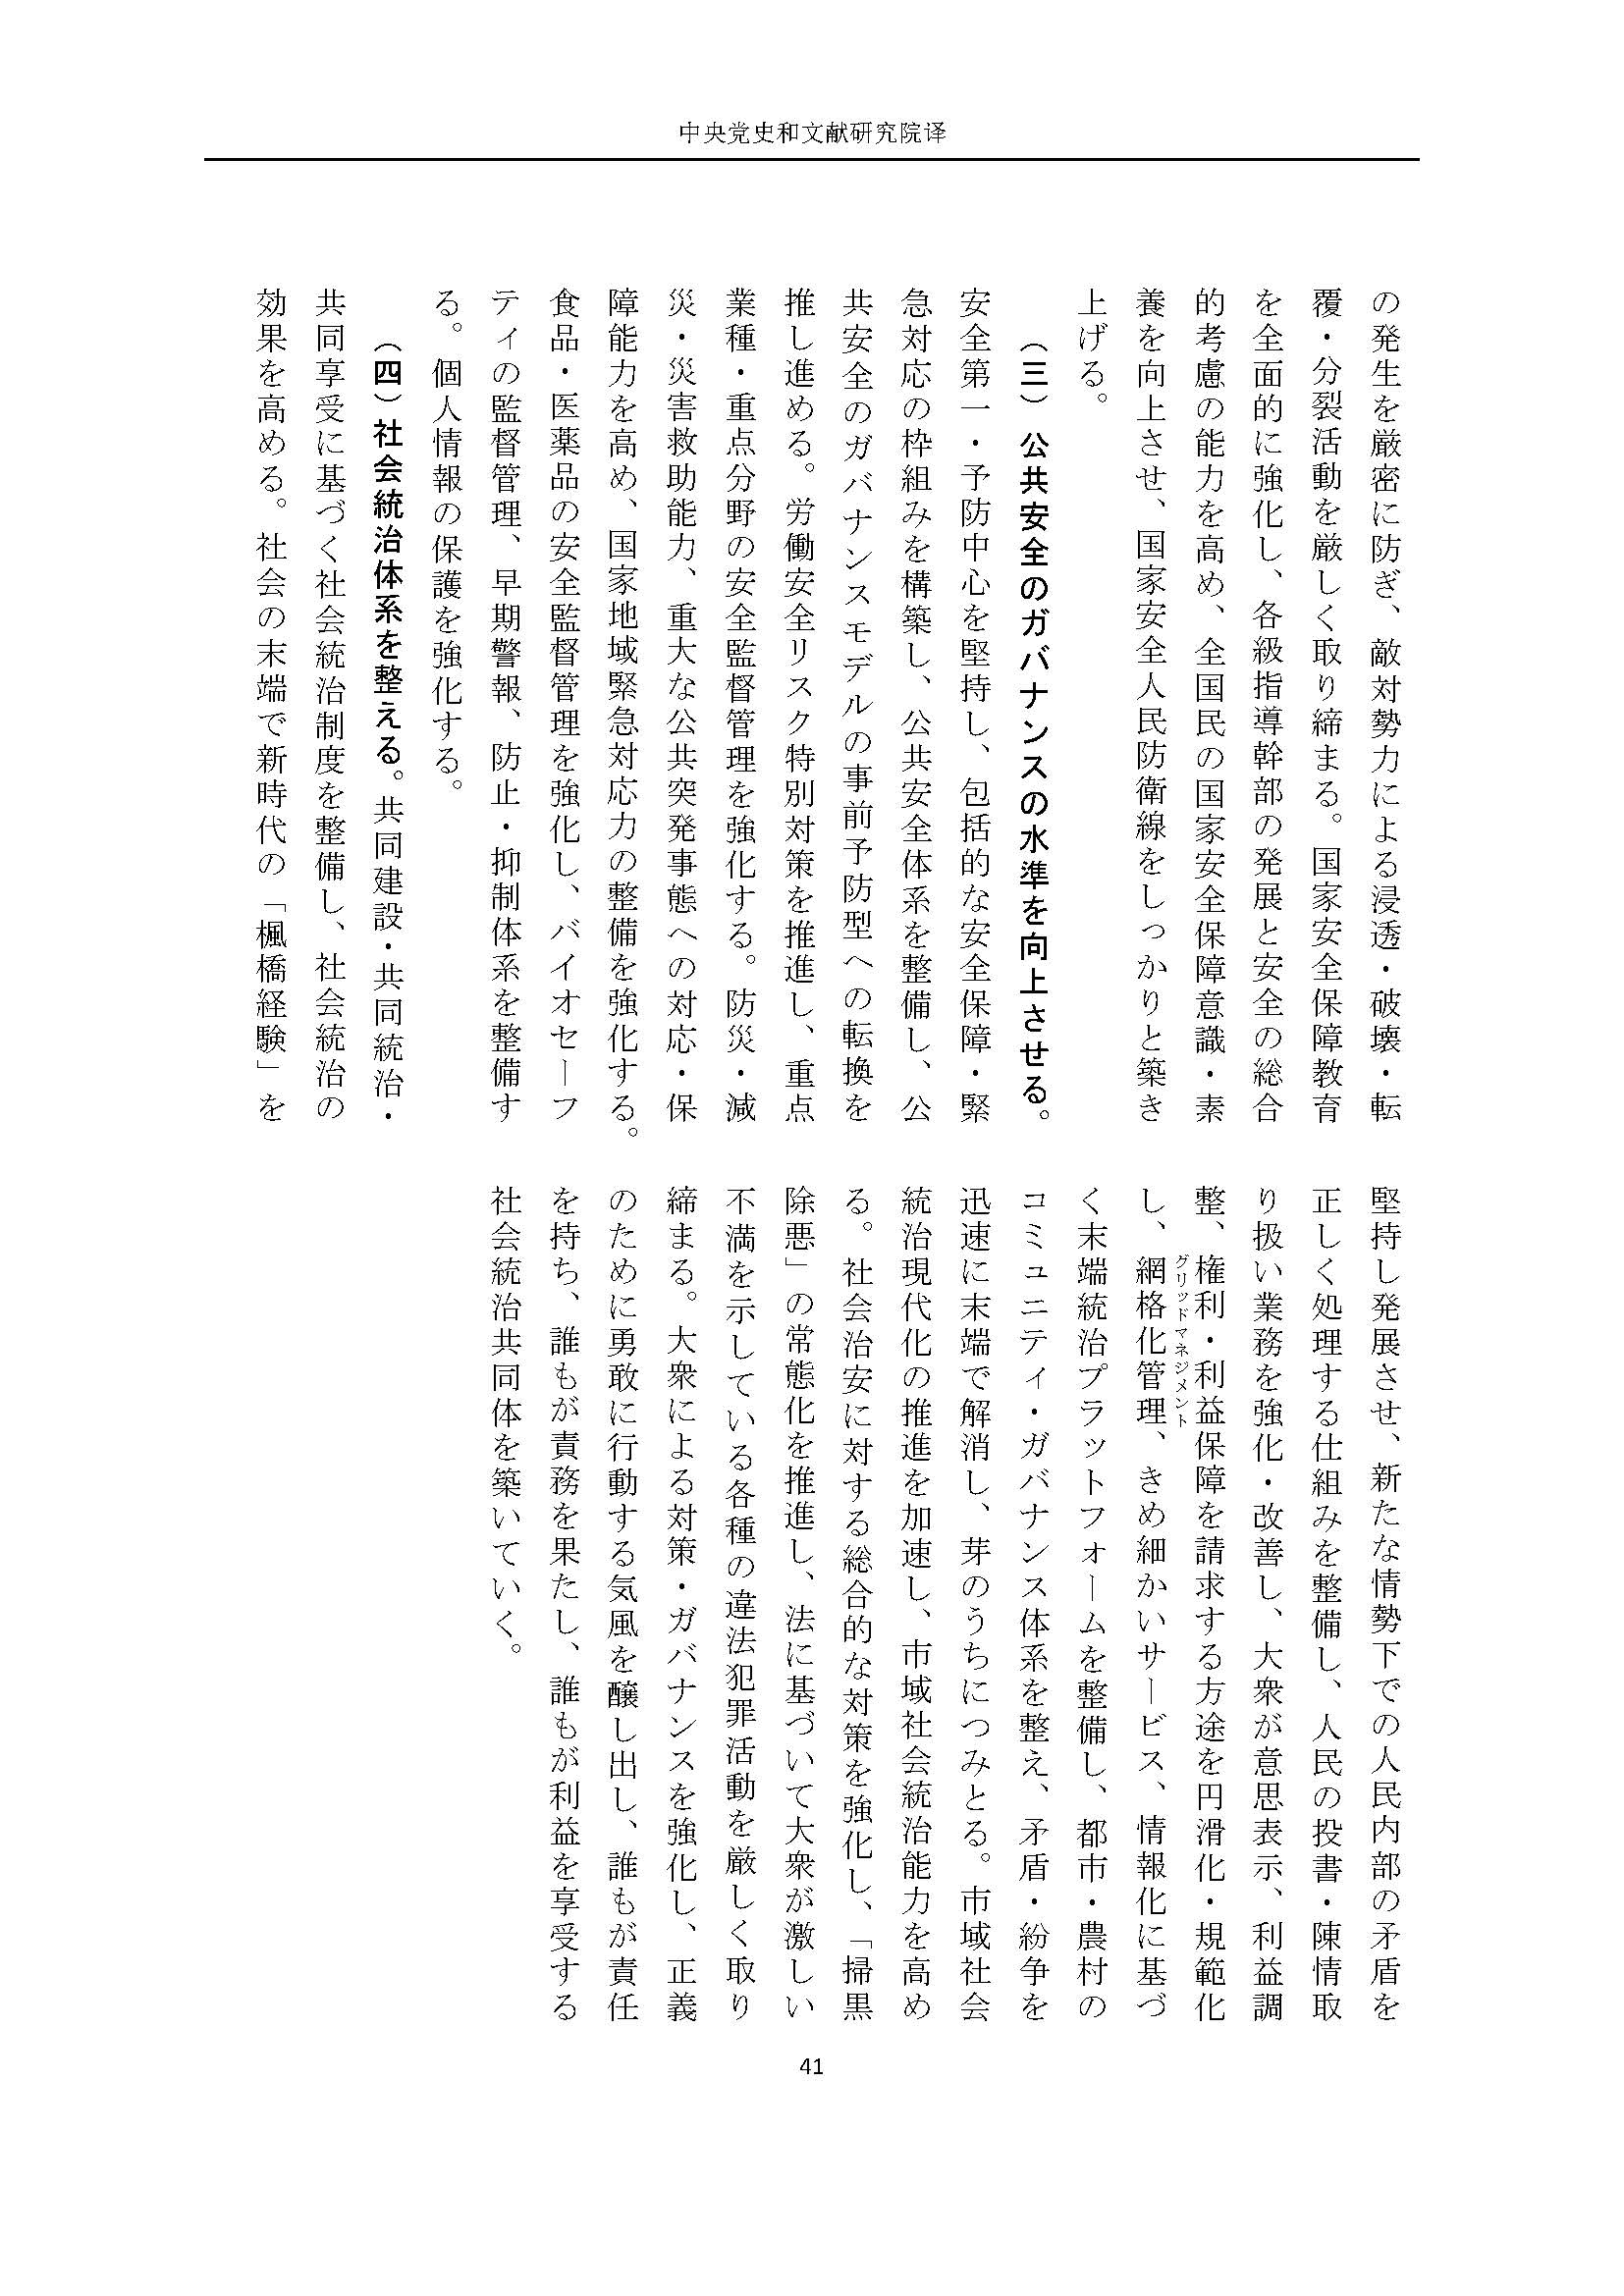 二十大报告（日文全文）_页面_42